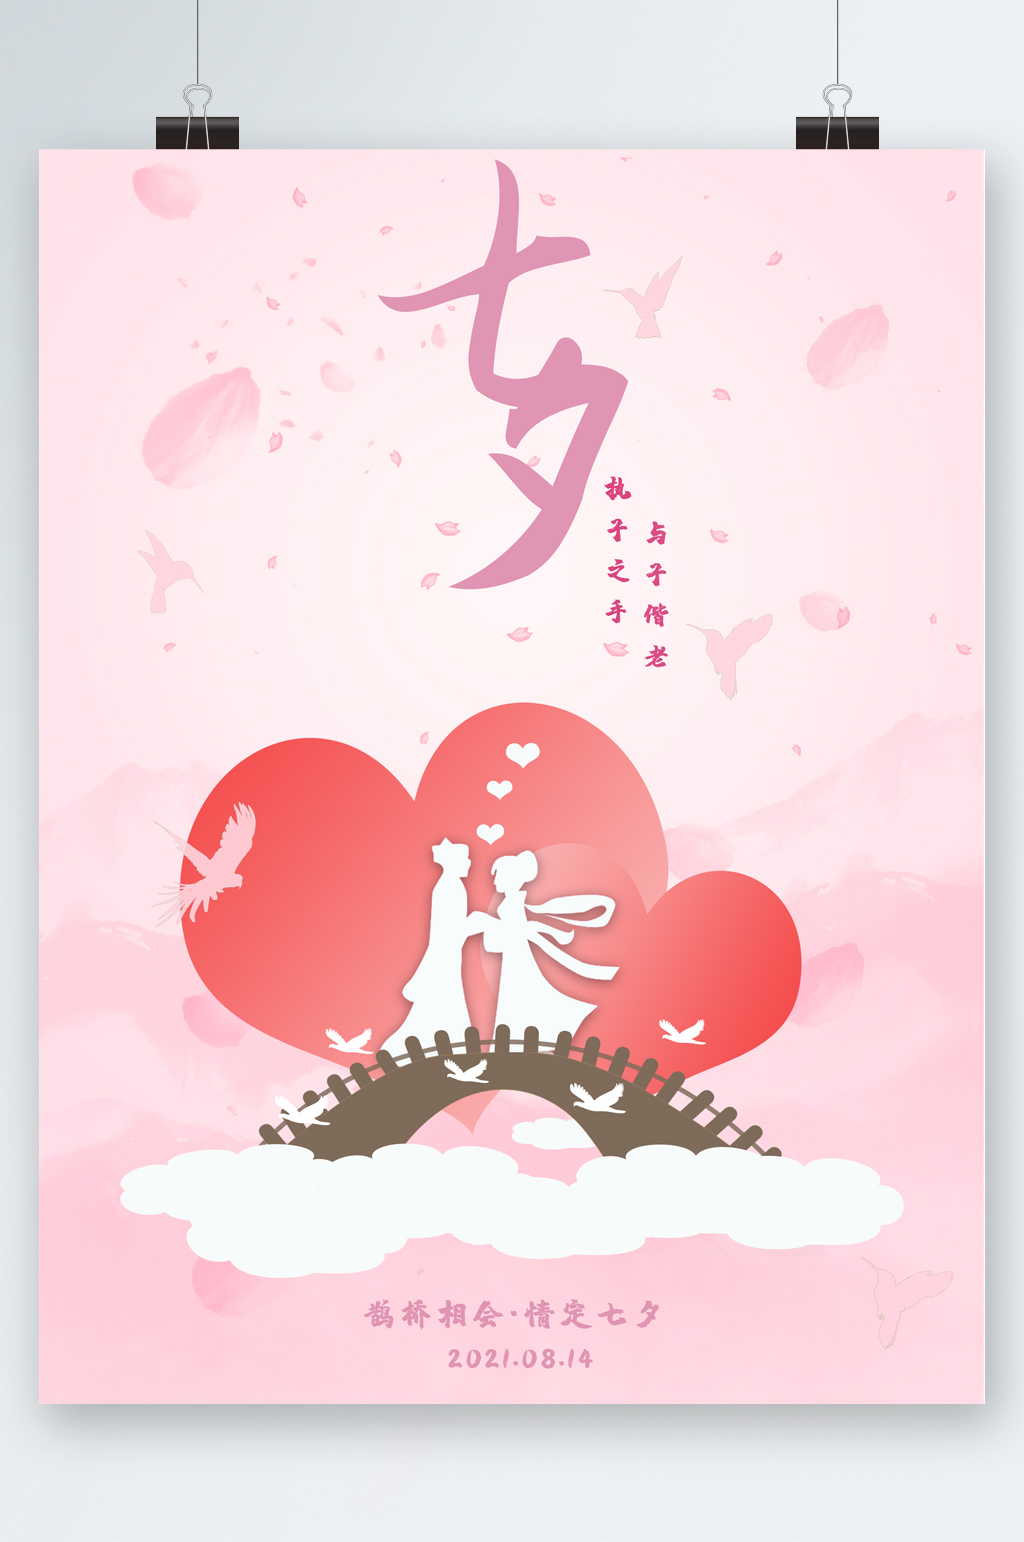 众图网独家提供七夕粉色浪漫海报素材免费下载,本作品是由图图上传的